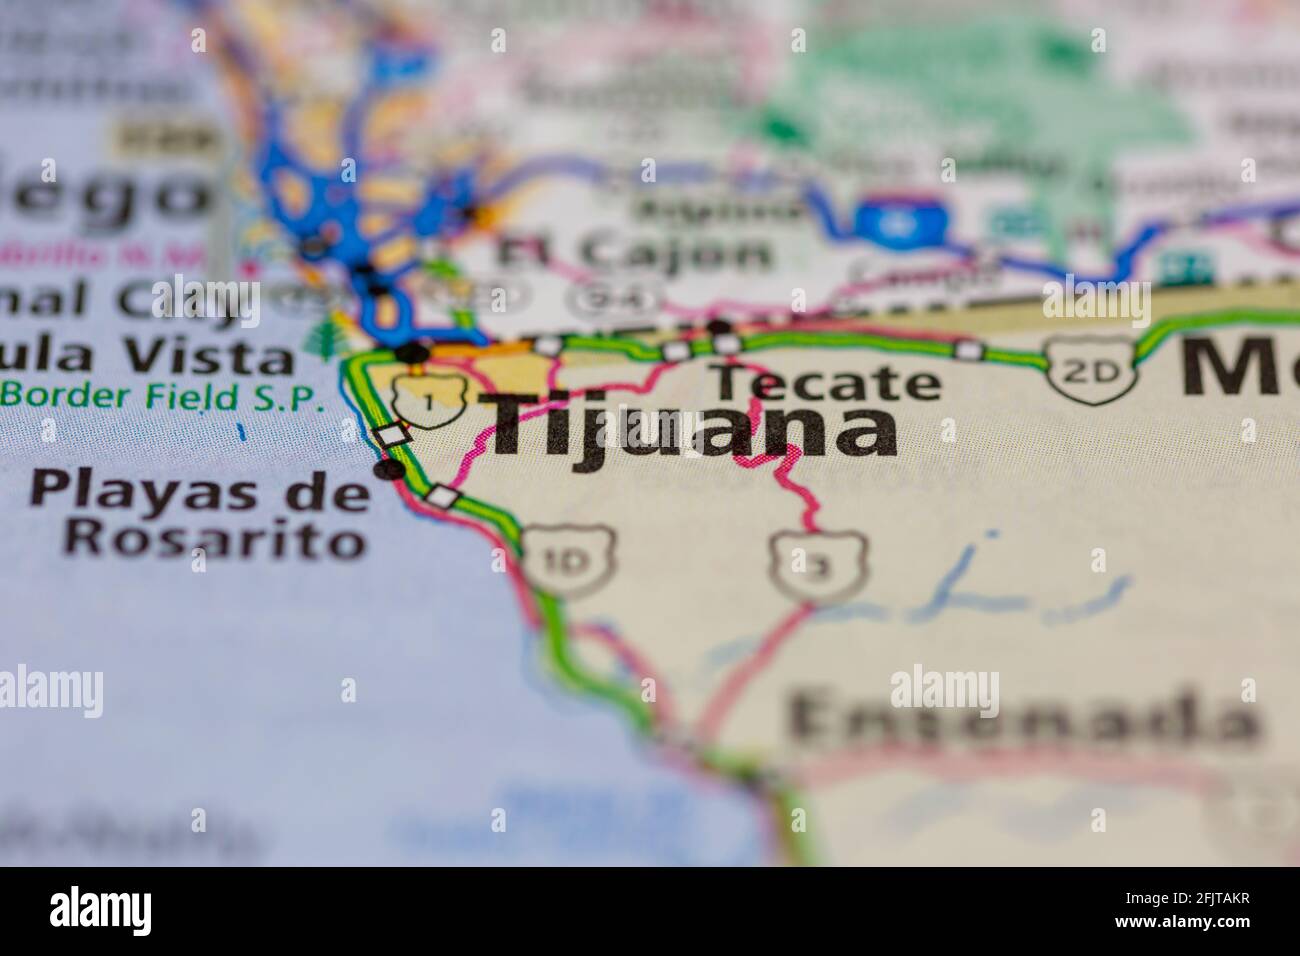 Tijuana Messico e le aree circostanti sono mostrate su una mappa stradale O mappa geografica Foto Stock